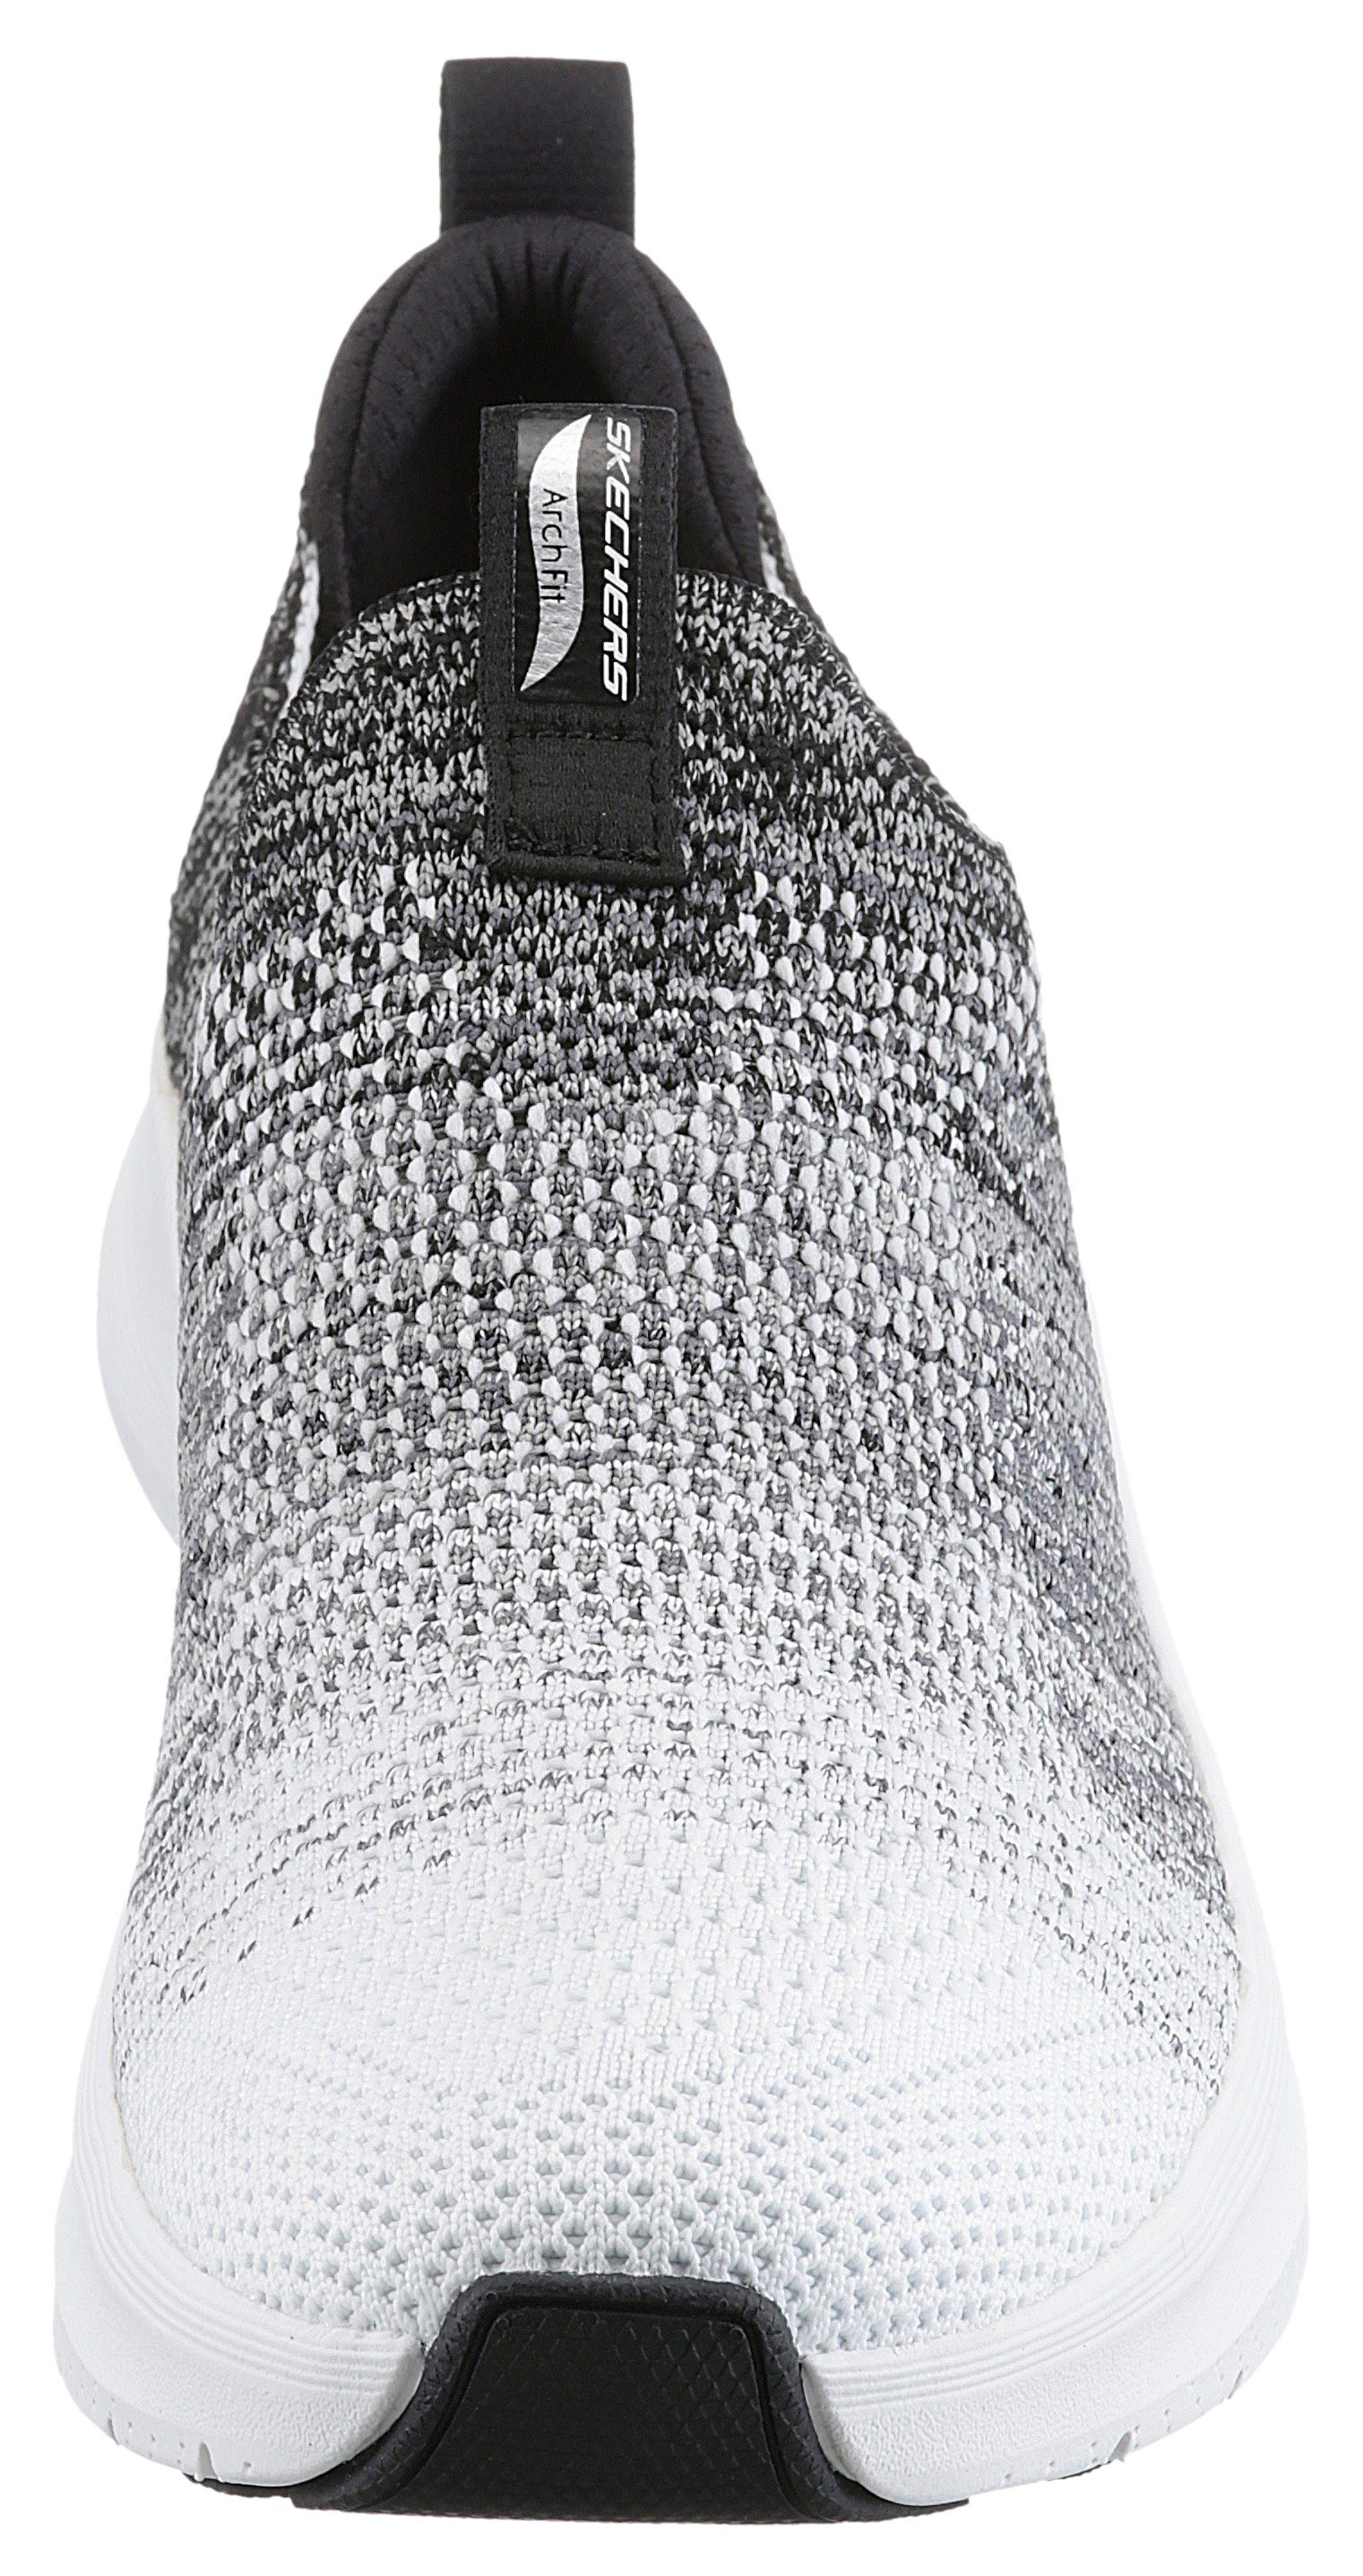 Skechers ARCH FIT 2.0 Sneaker mit weiß-schwarz Slip-On Farbverlauf stylischem